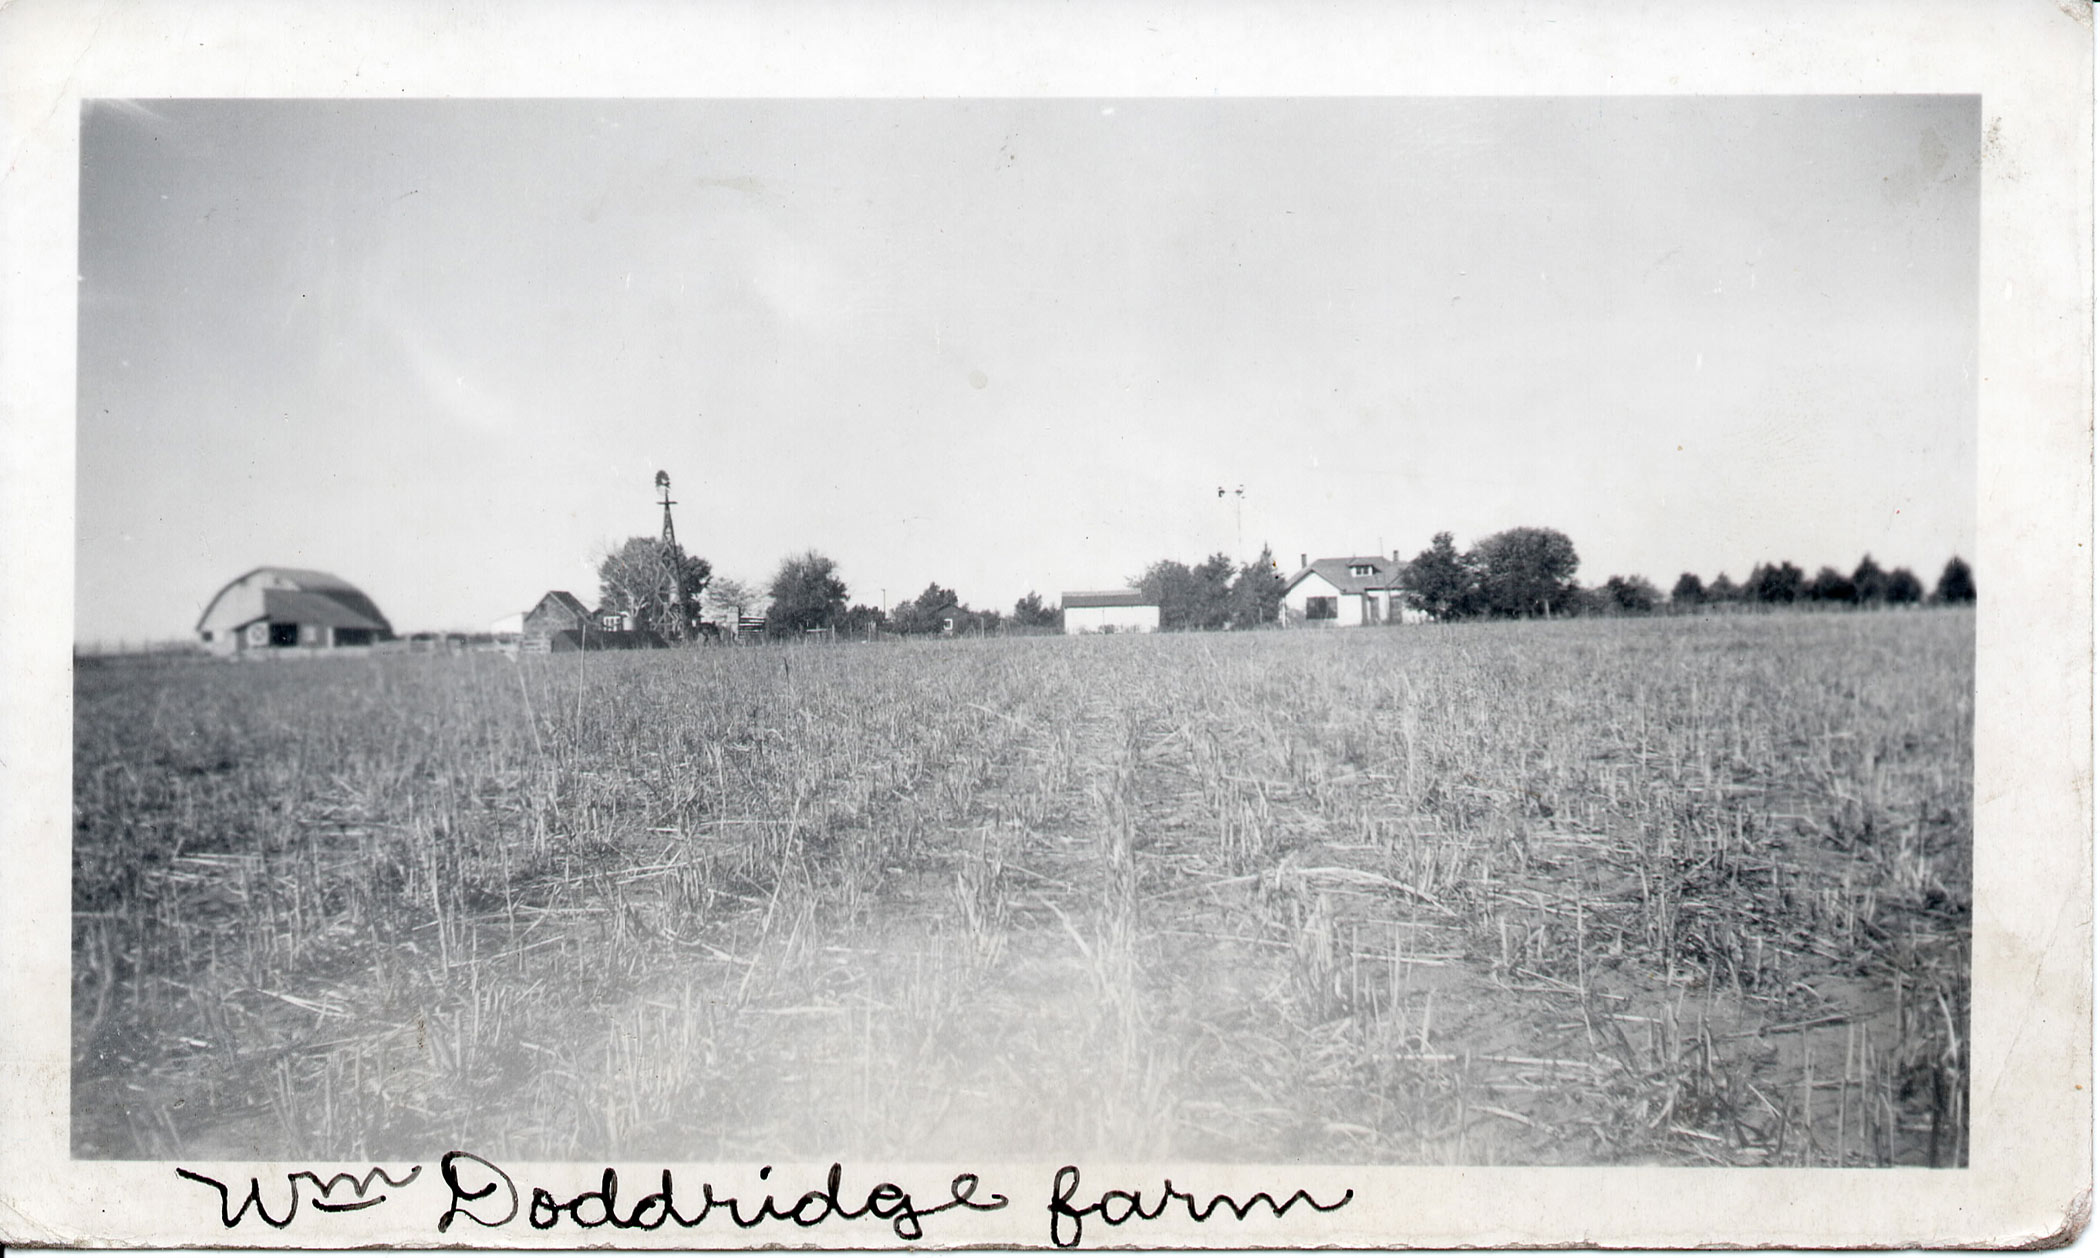 An historic photograph looking across a field towards the Glenn Doddridge Farm & Ranch.